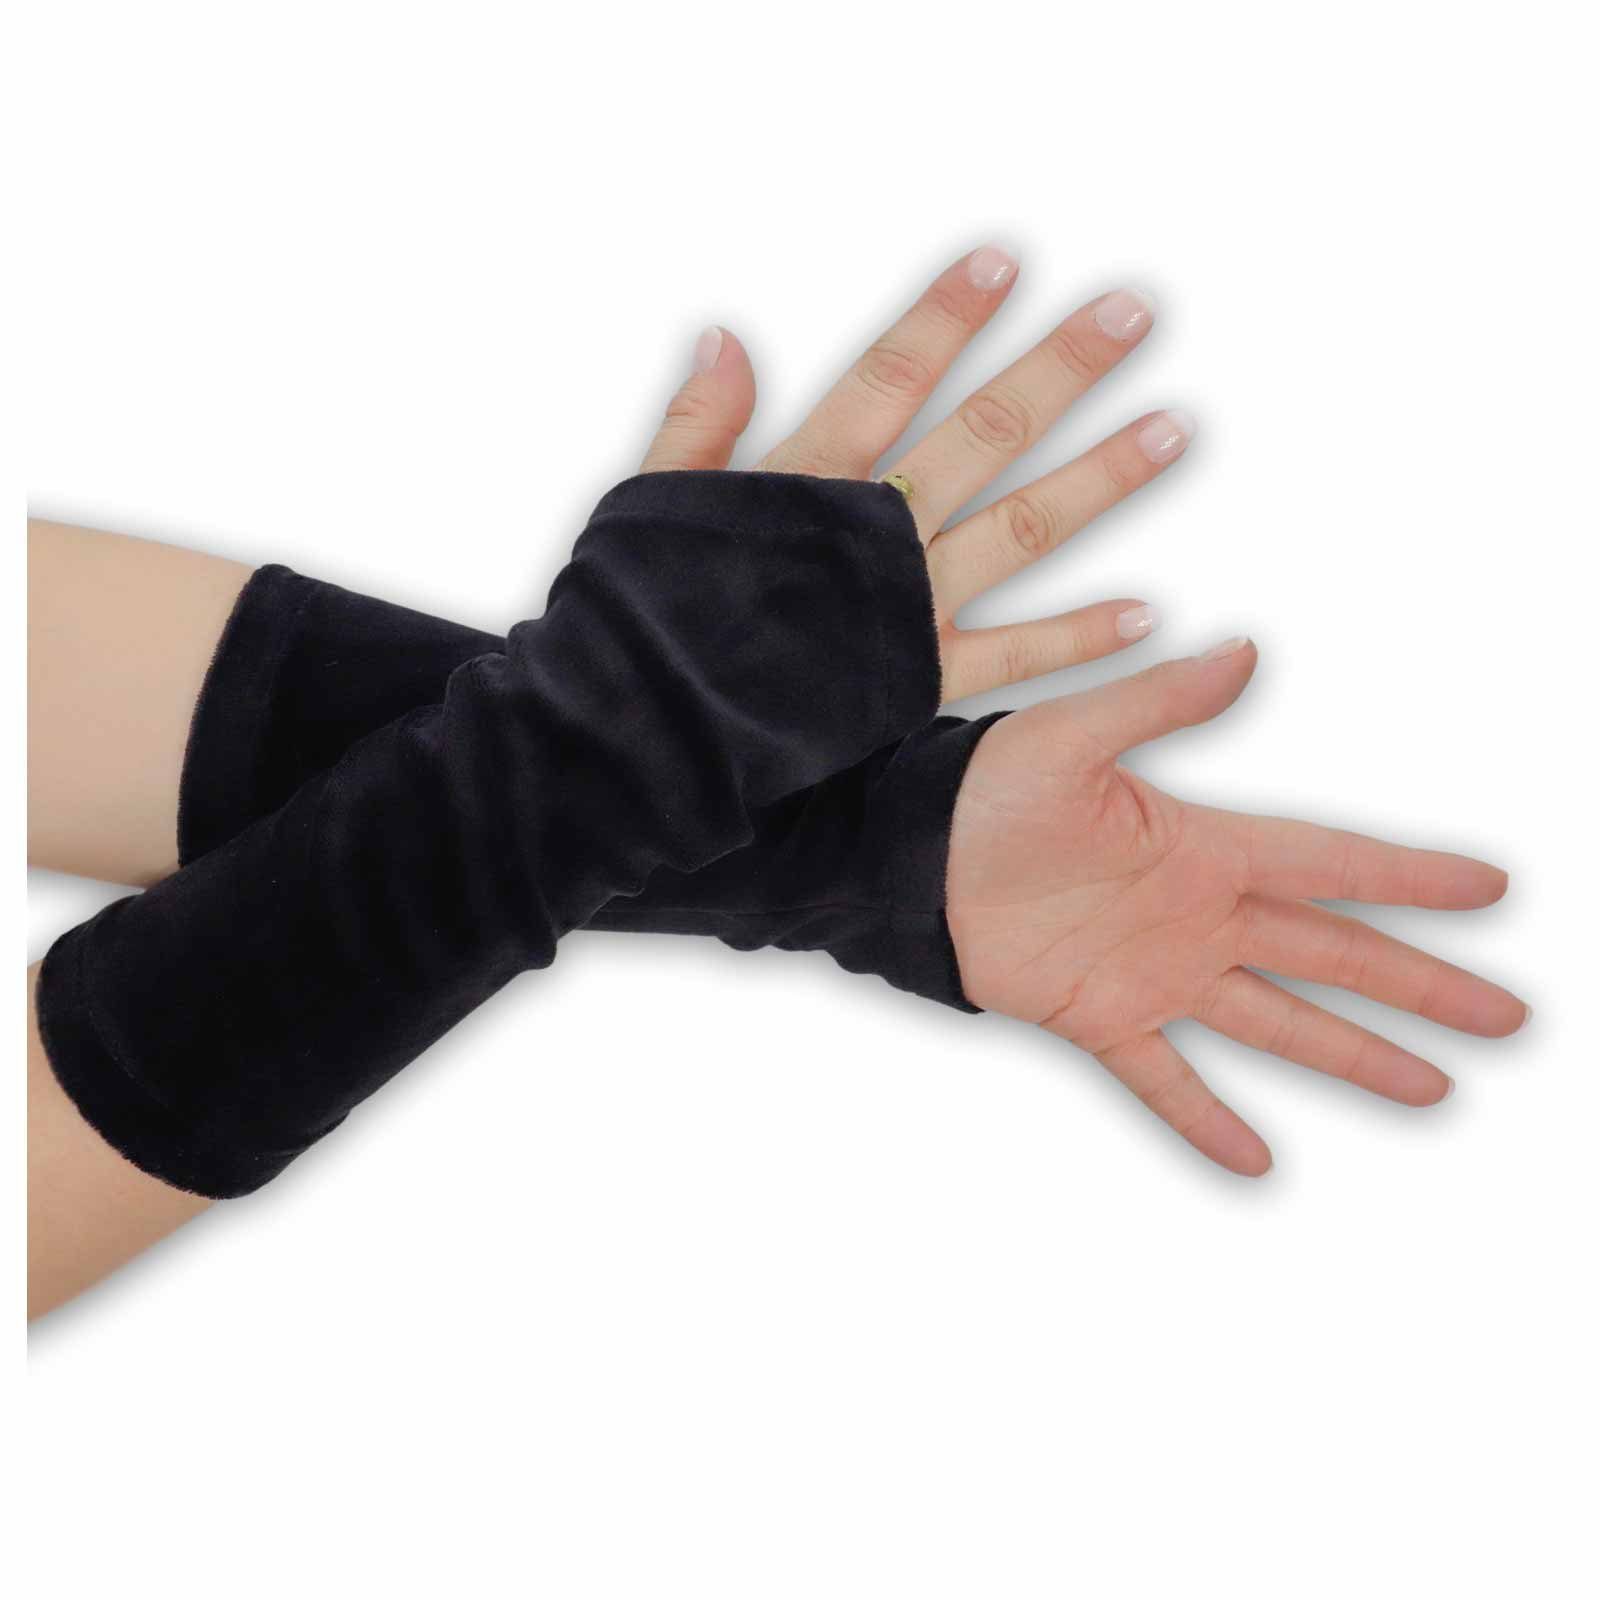 Armstulpen Boho Glöckchen MAGIE Armstulpen Handschuhe UND Schwarz Samt + / Damen Stulpen Black KUNST Handwärmer